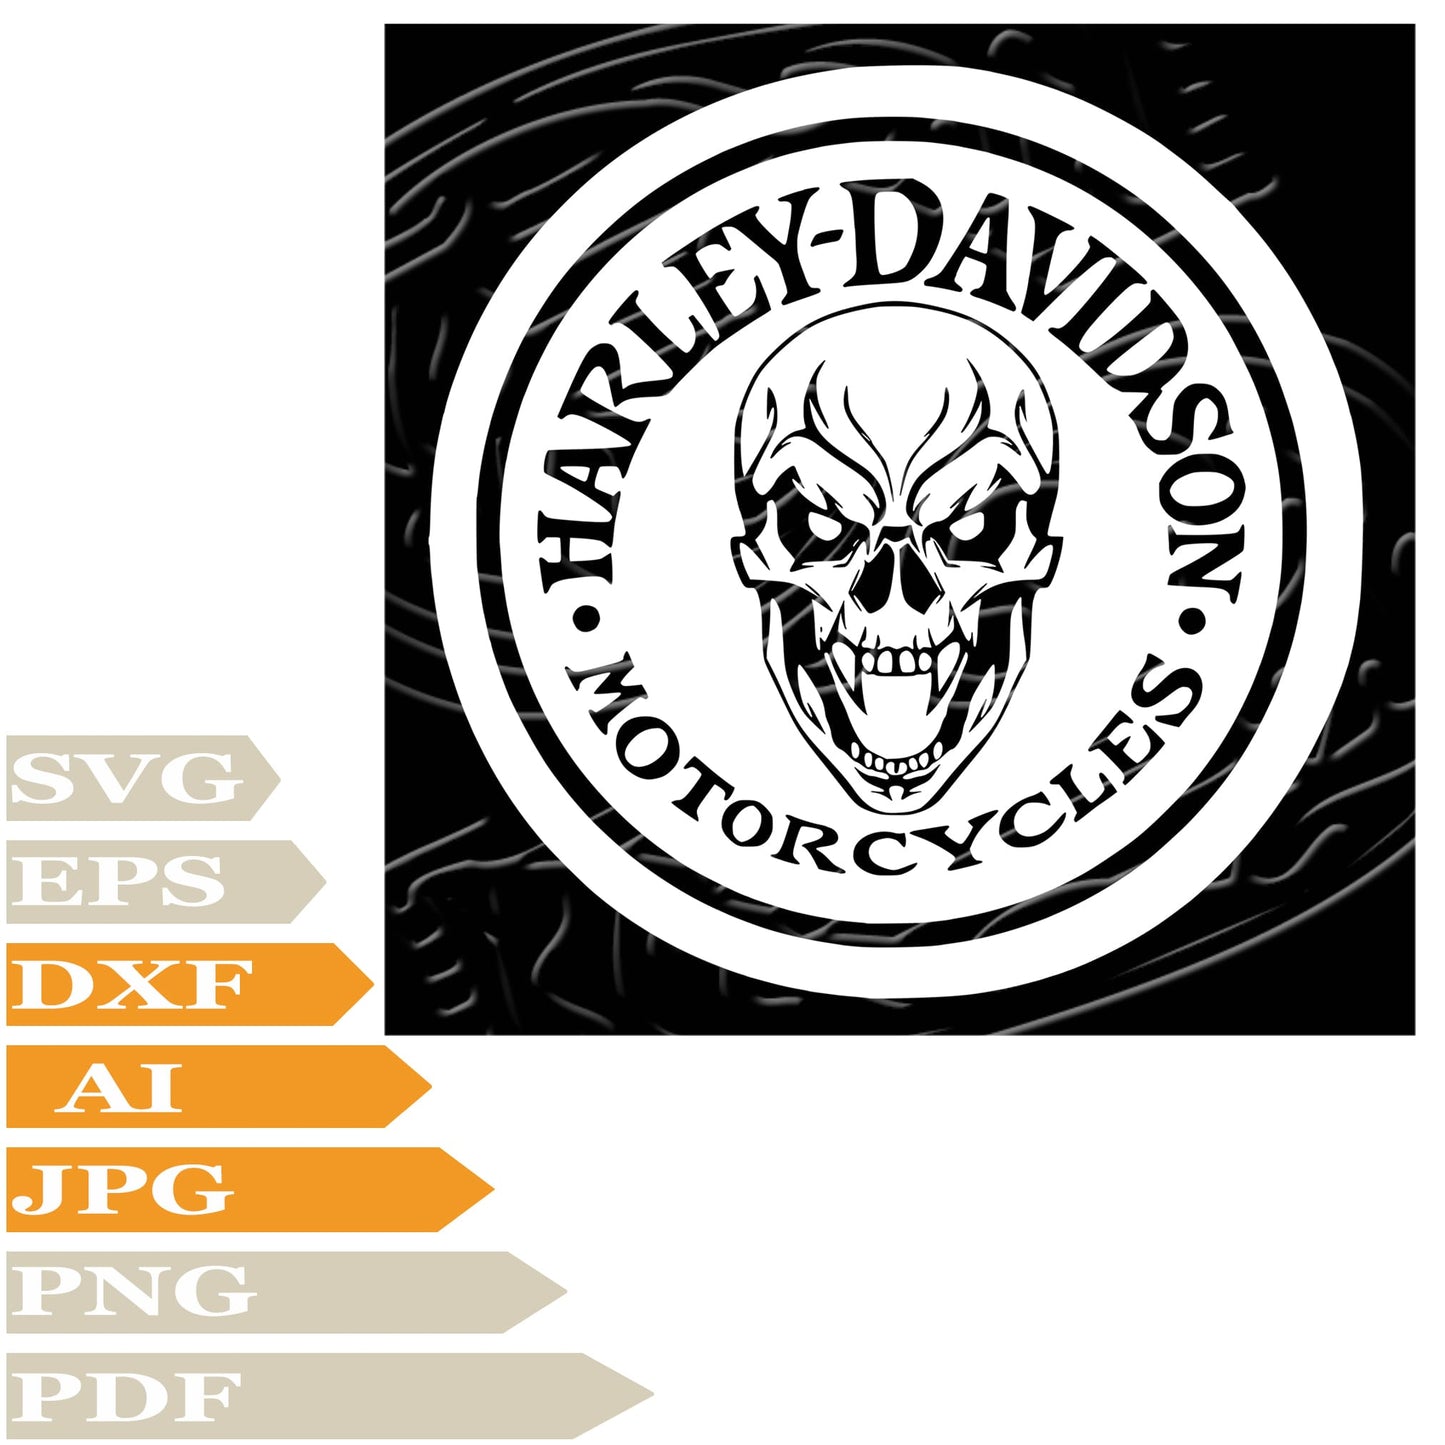 Skull Svg File, Skull Harley Davidson Svg Design, Harley Davidson Logo Png, Skull Vector Graphics, Harley Davidson Logo Svg For Tattoo, Skull Harley Davidson Svg For Cricut